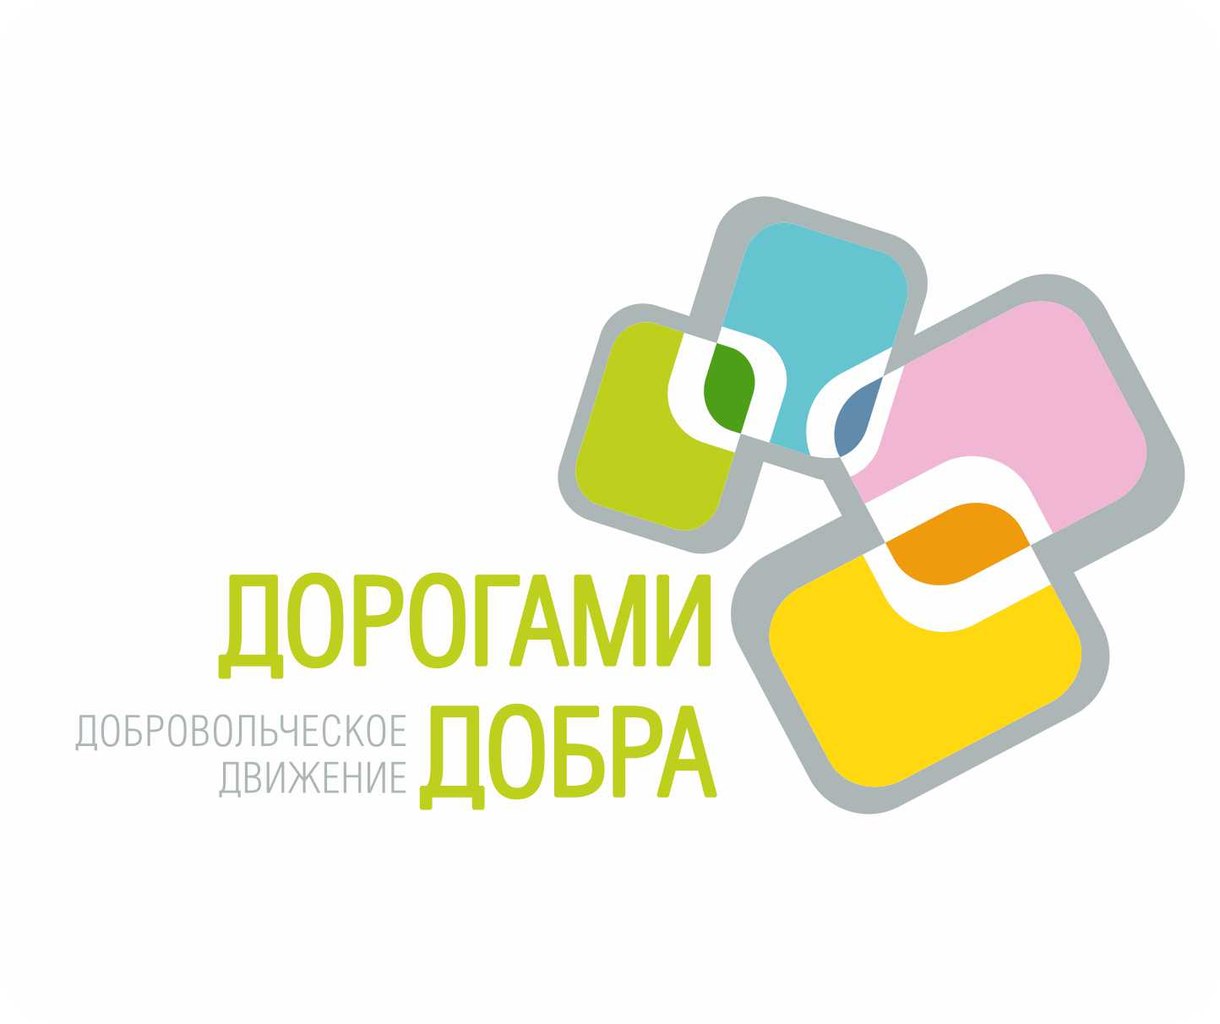 Логотип Добровольческого движения "Дорогами добра" (Екатеринбург)